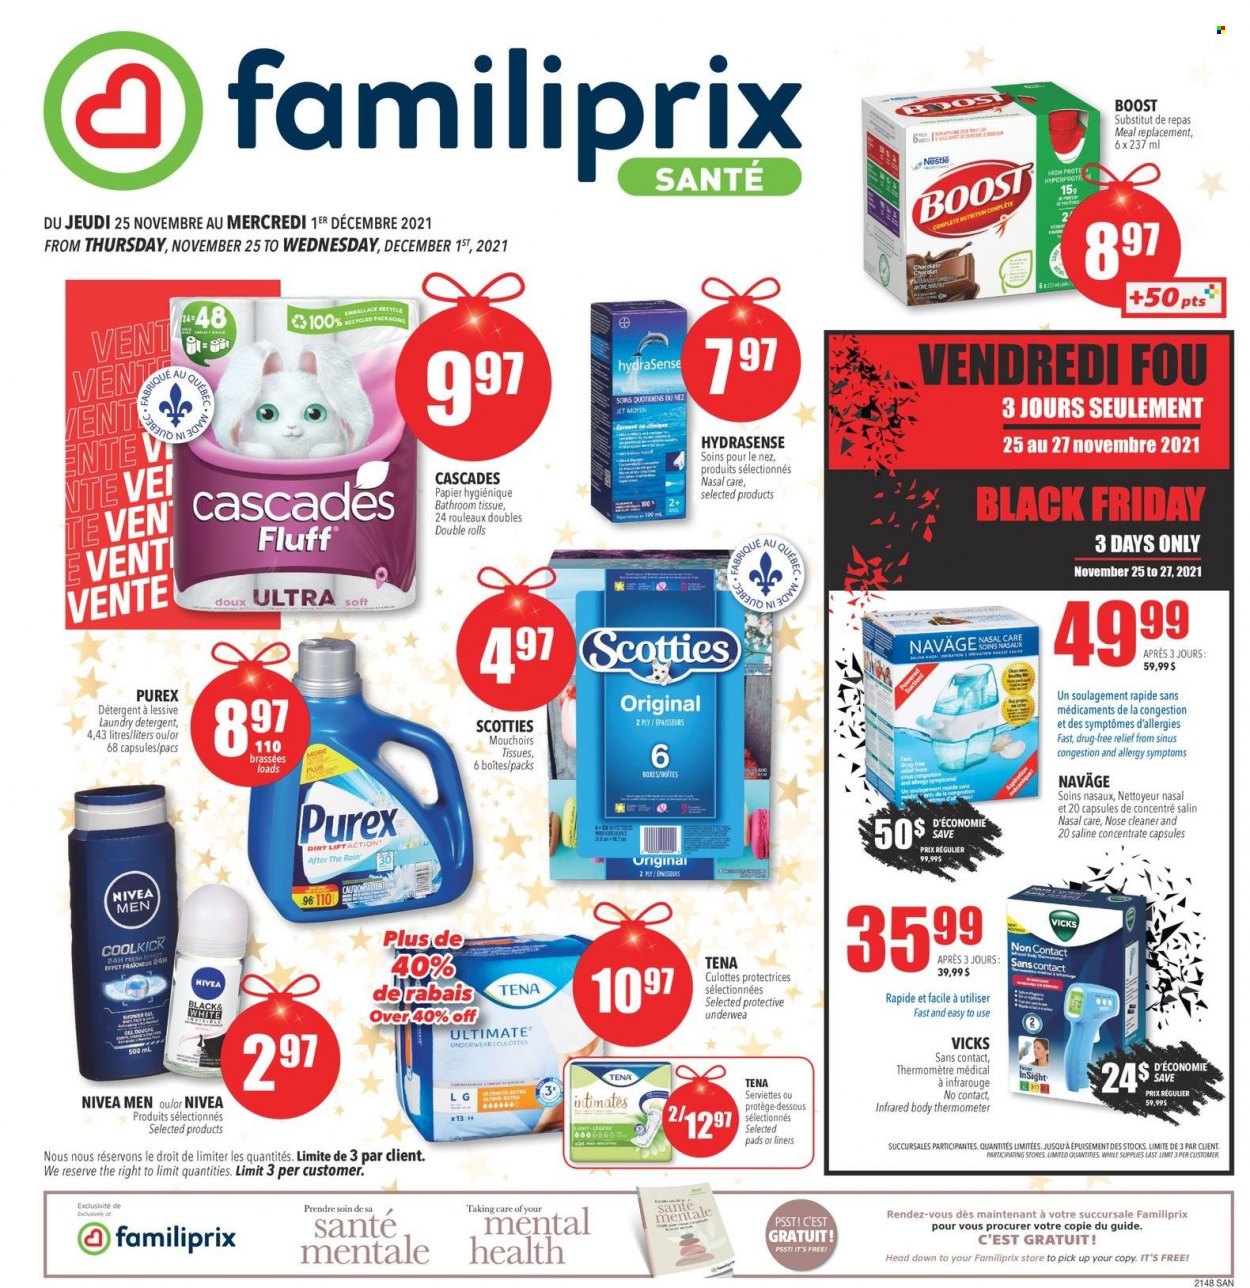 Familiprix Santé flyer  - November 25, 2021 - December 01, 2021.